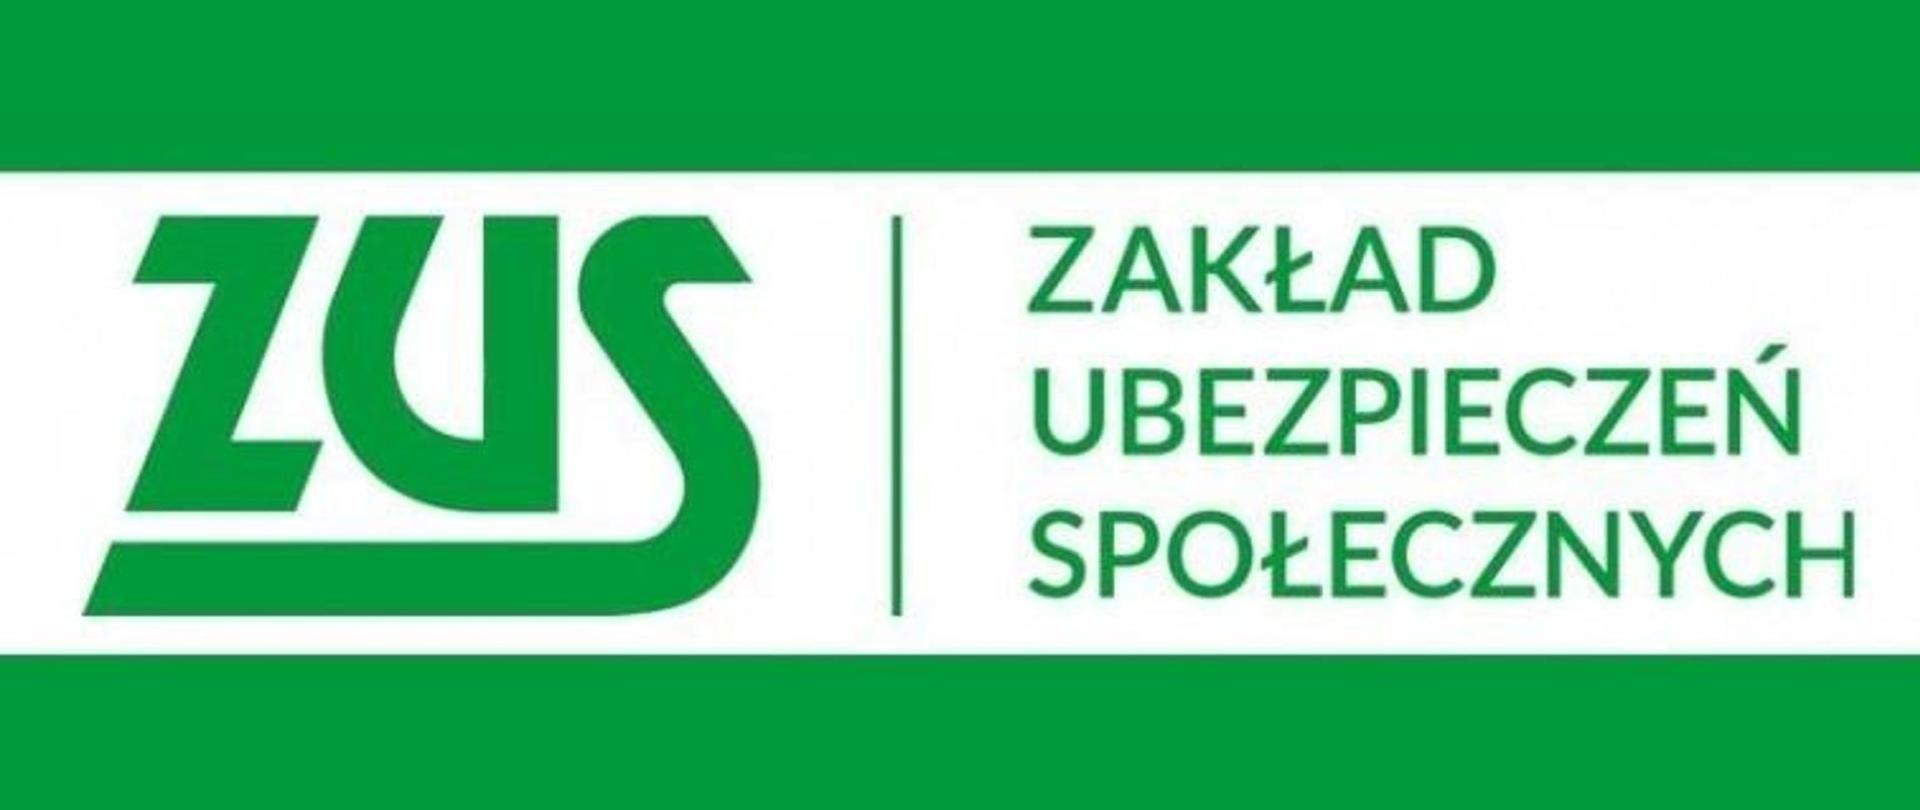 logo ZUS